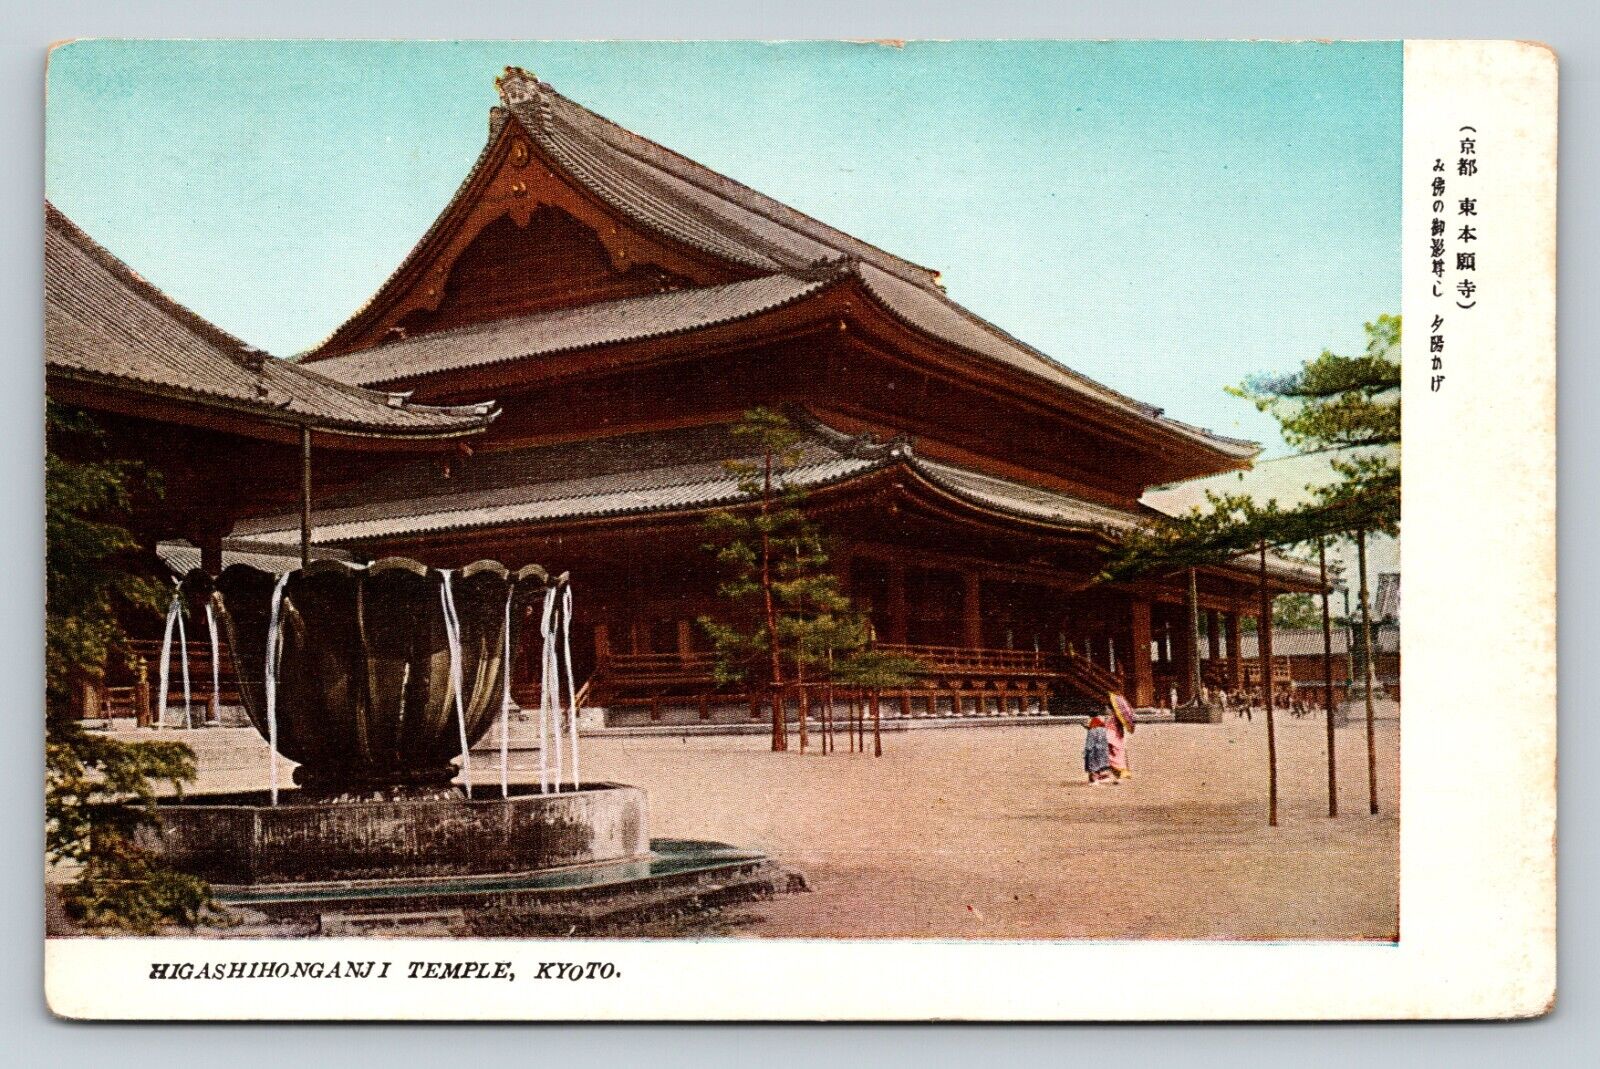 Higashihonganji Temple Kyoto Japan VINTAGE Postcard